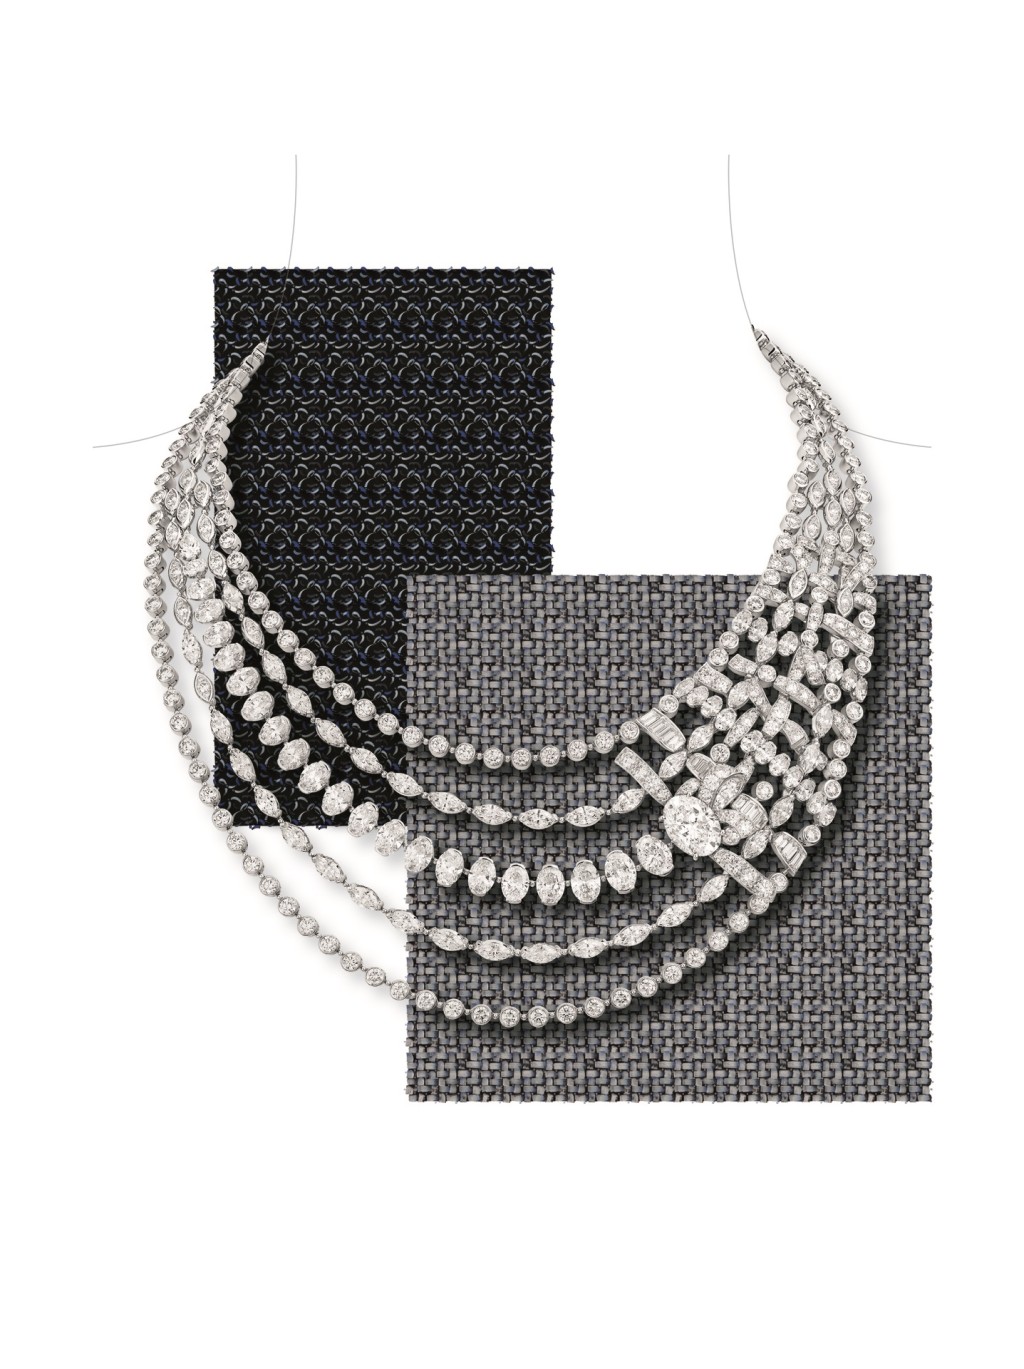 Tweed Mademoiselle白金及钻石项链，当中单颗椭圆形切割钻石重约5.01卡。